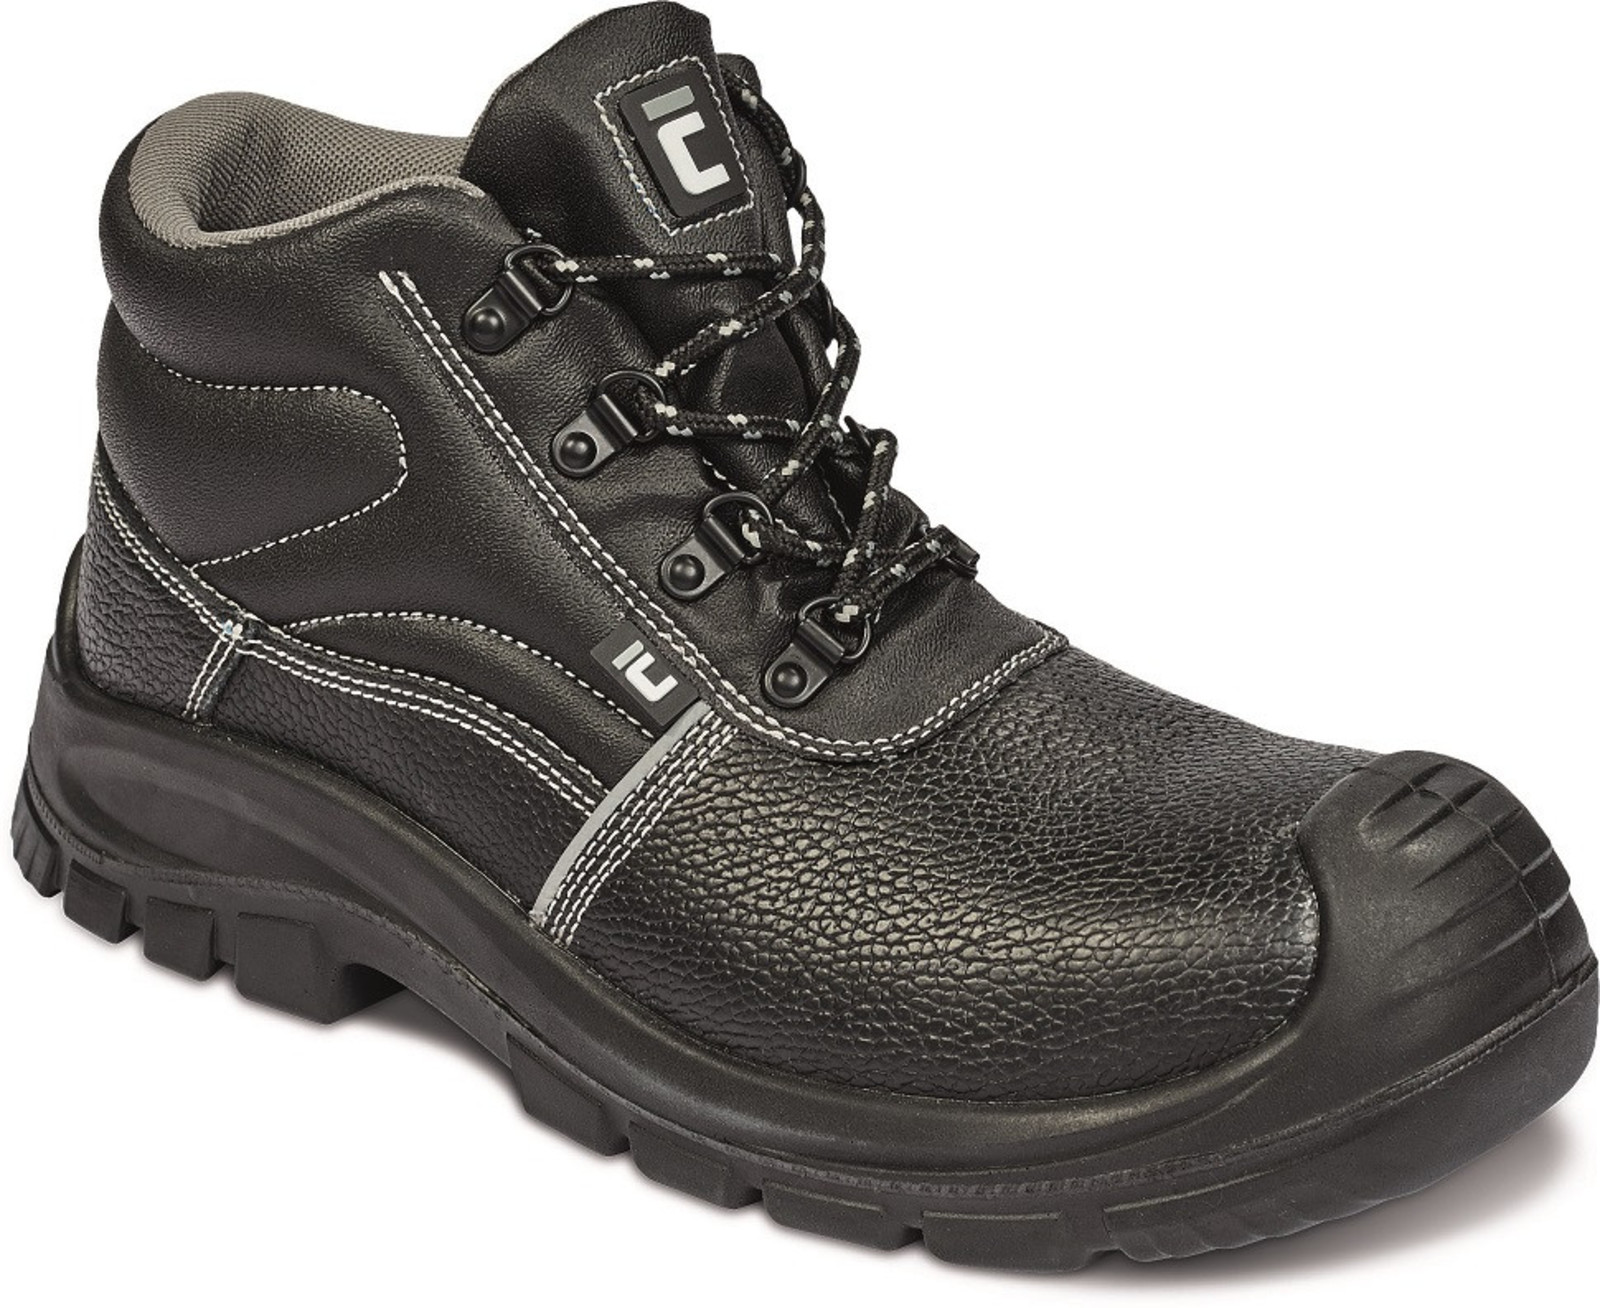 Bezpečnostná obuv Raven XT S3 Metal Free - veľkosť: 40, farba: čierna